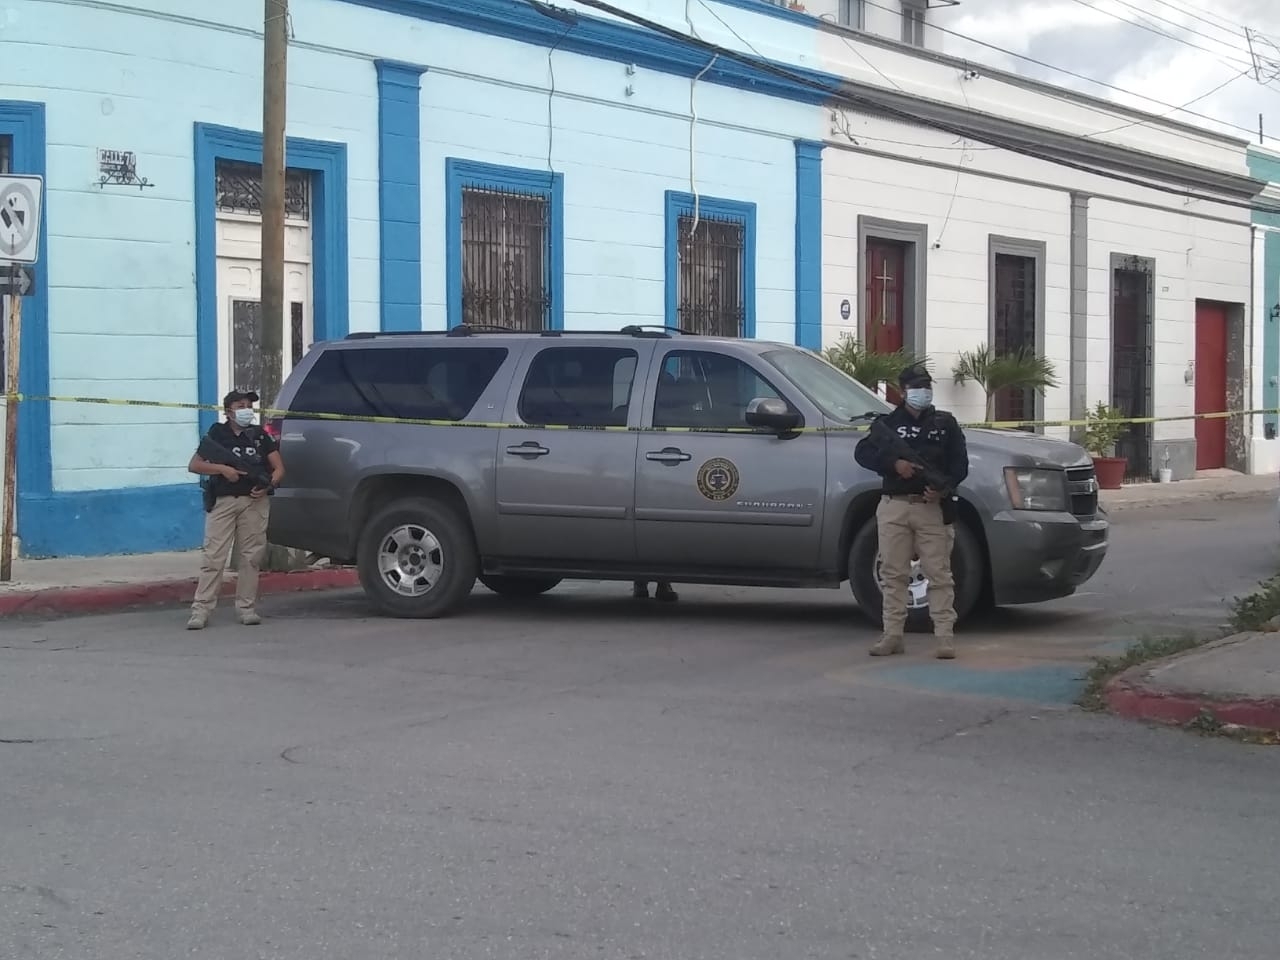 Secuestradores de empleados en un call center de Mérida pasarán 37 años en prisión